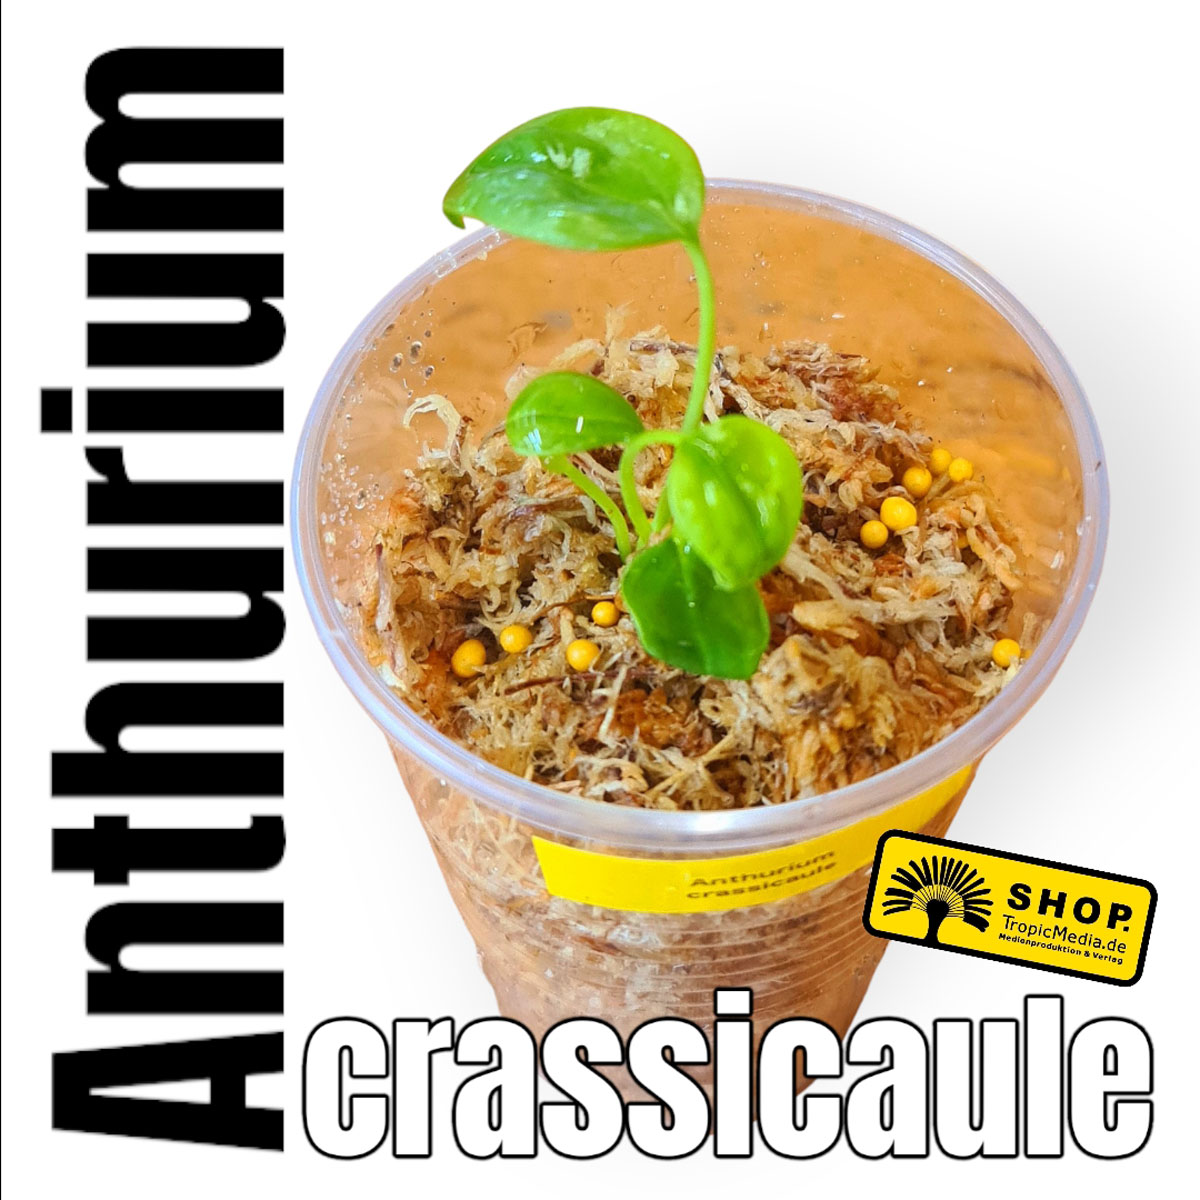 Anthurium "crassicaule" Exklusiv